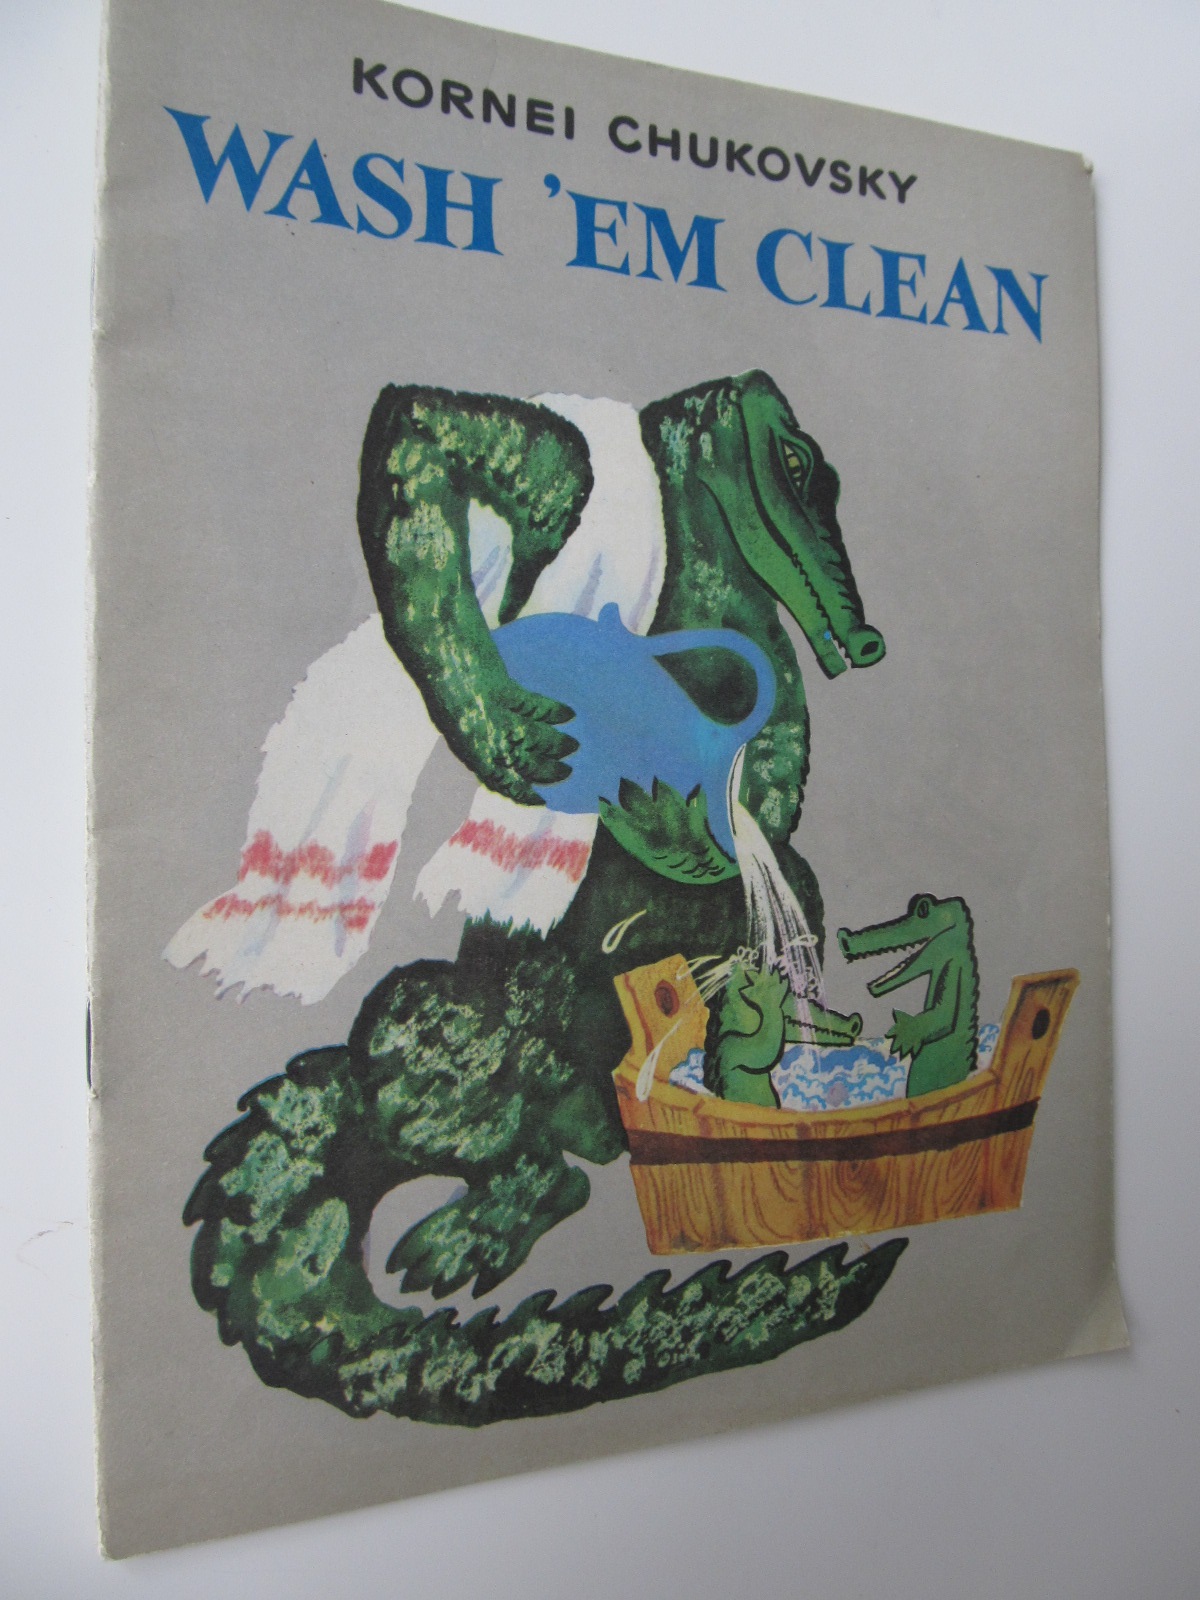 Wash 'em clean - Kornel Chukovsky | Detalii carte